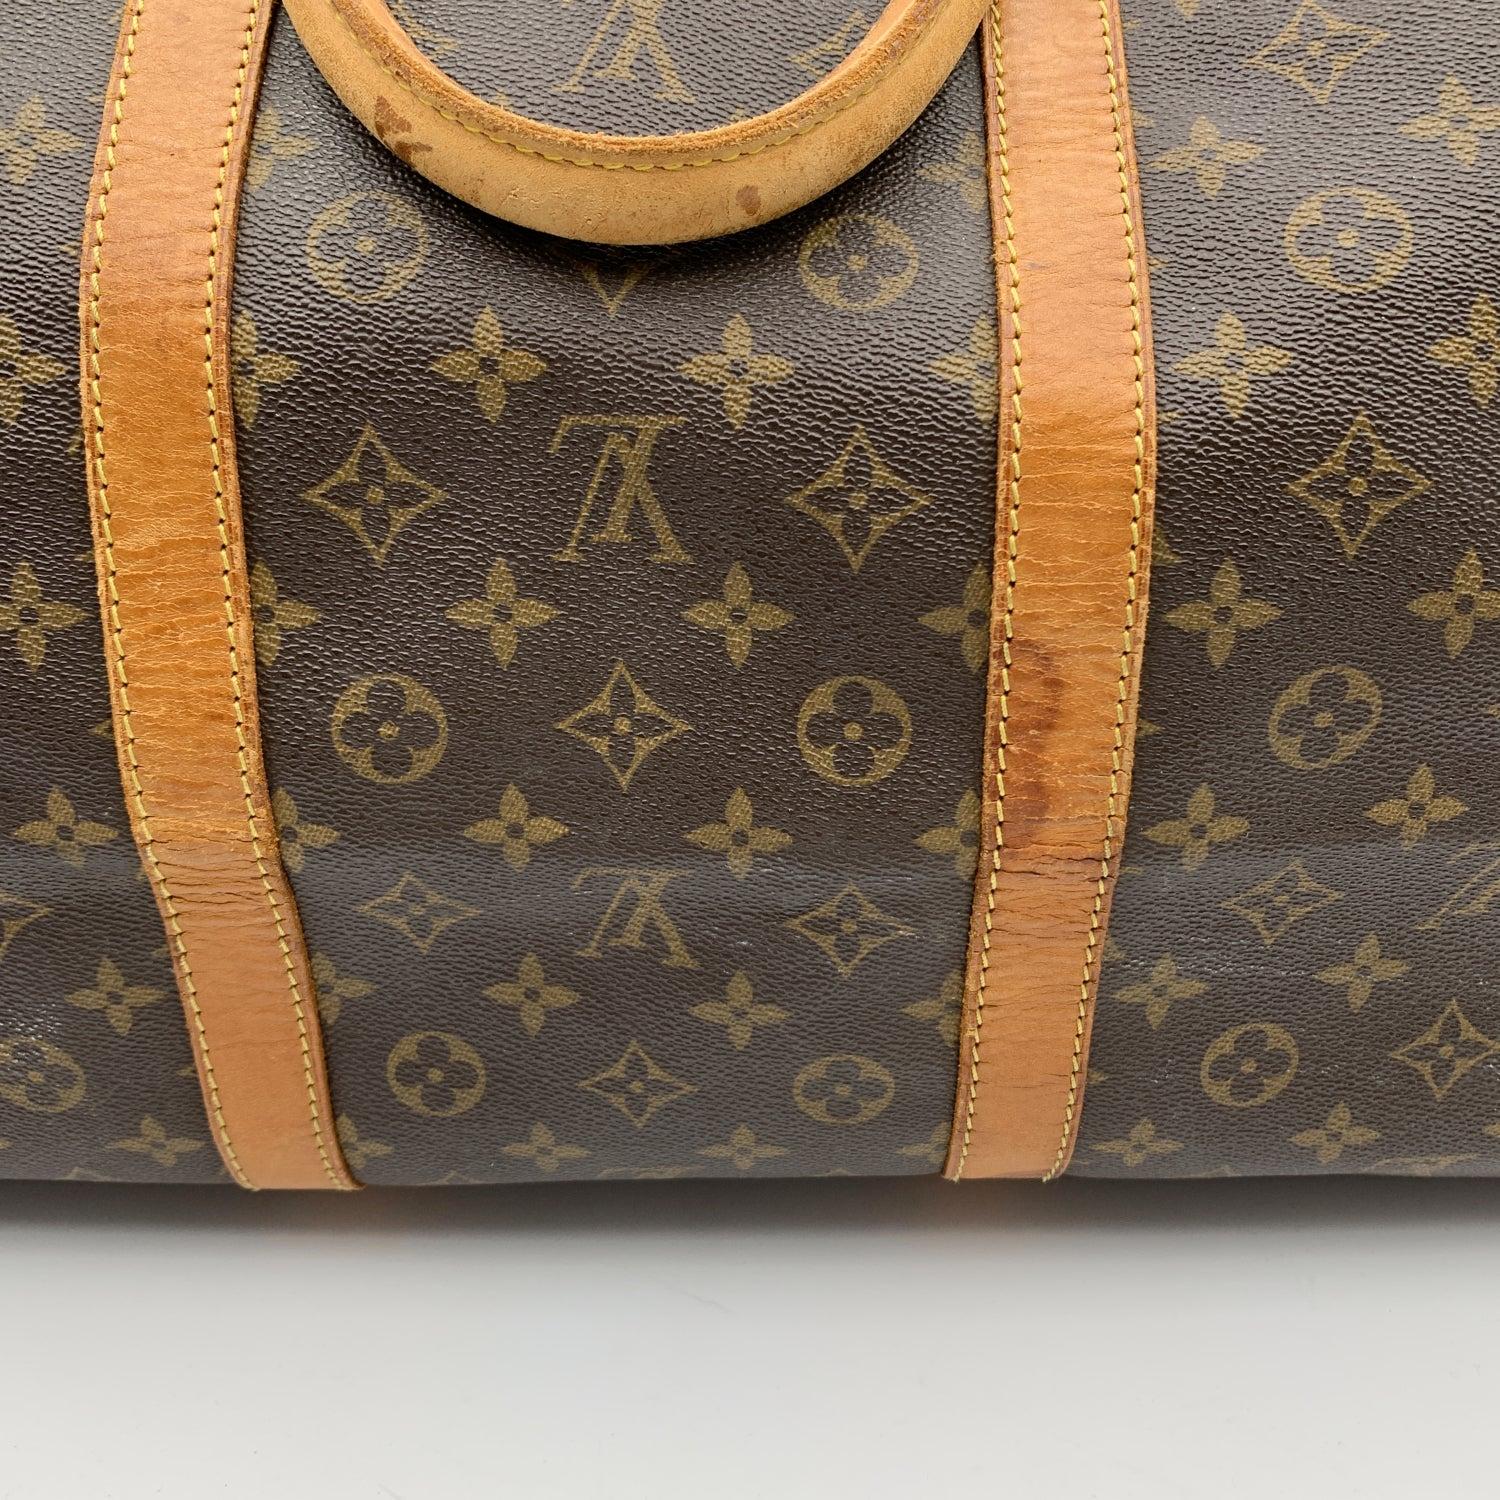 Louis Vuitton Monogram Keepall 60 Large Duffle Travel Bag M41412 3